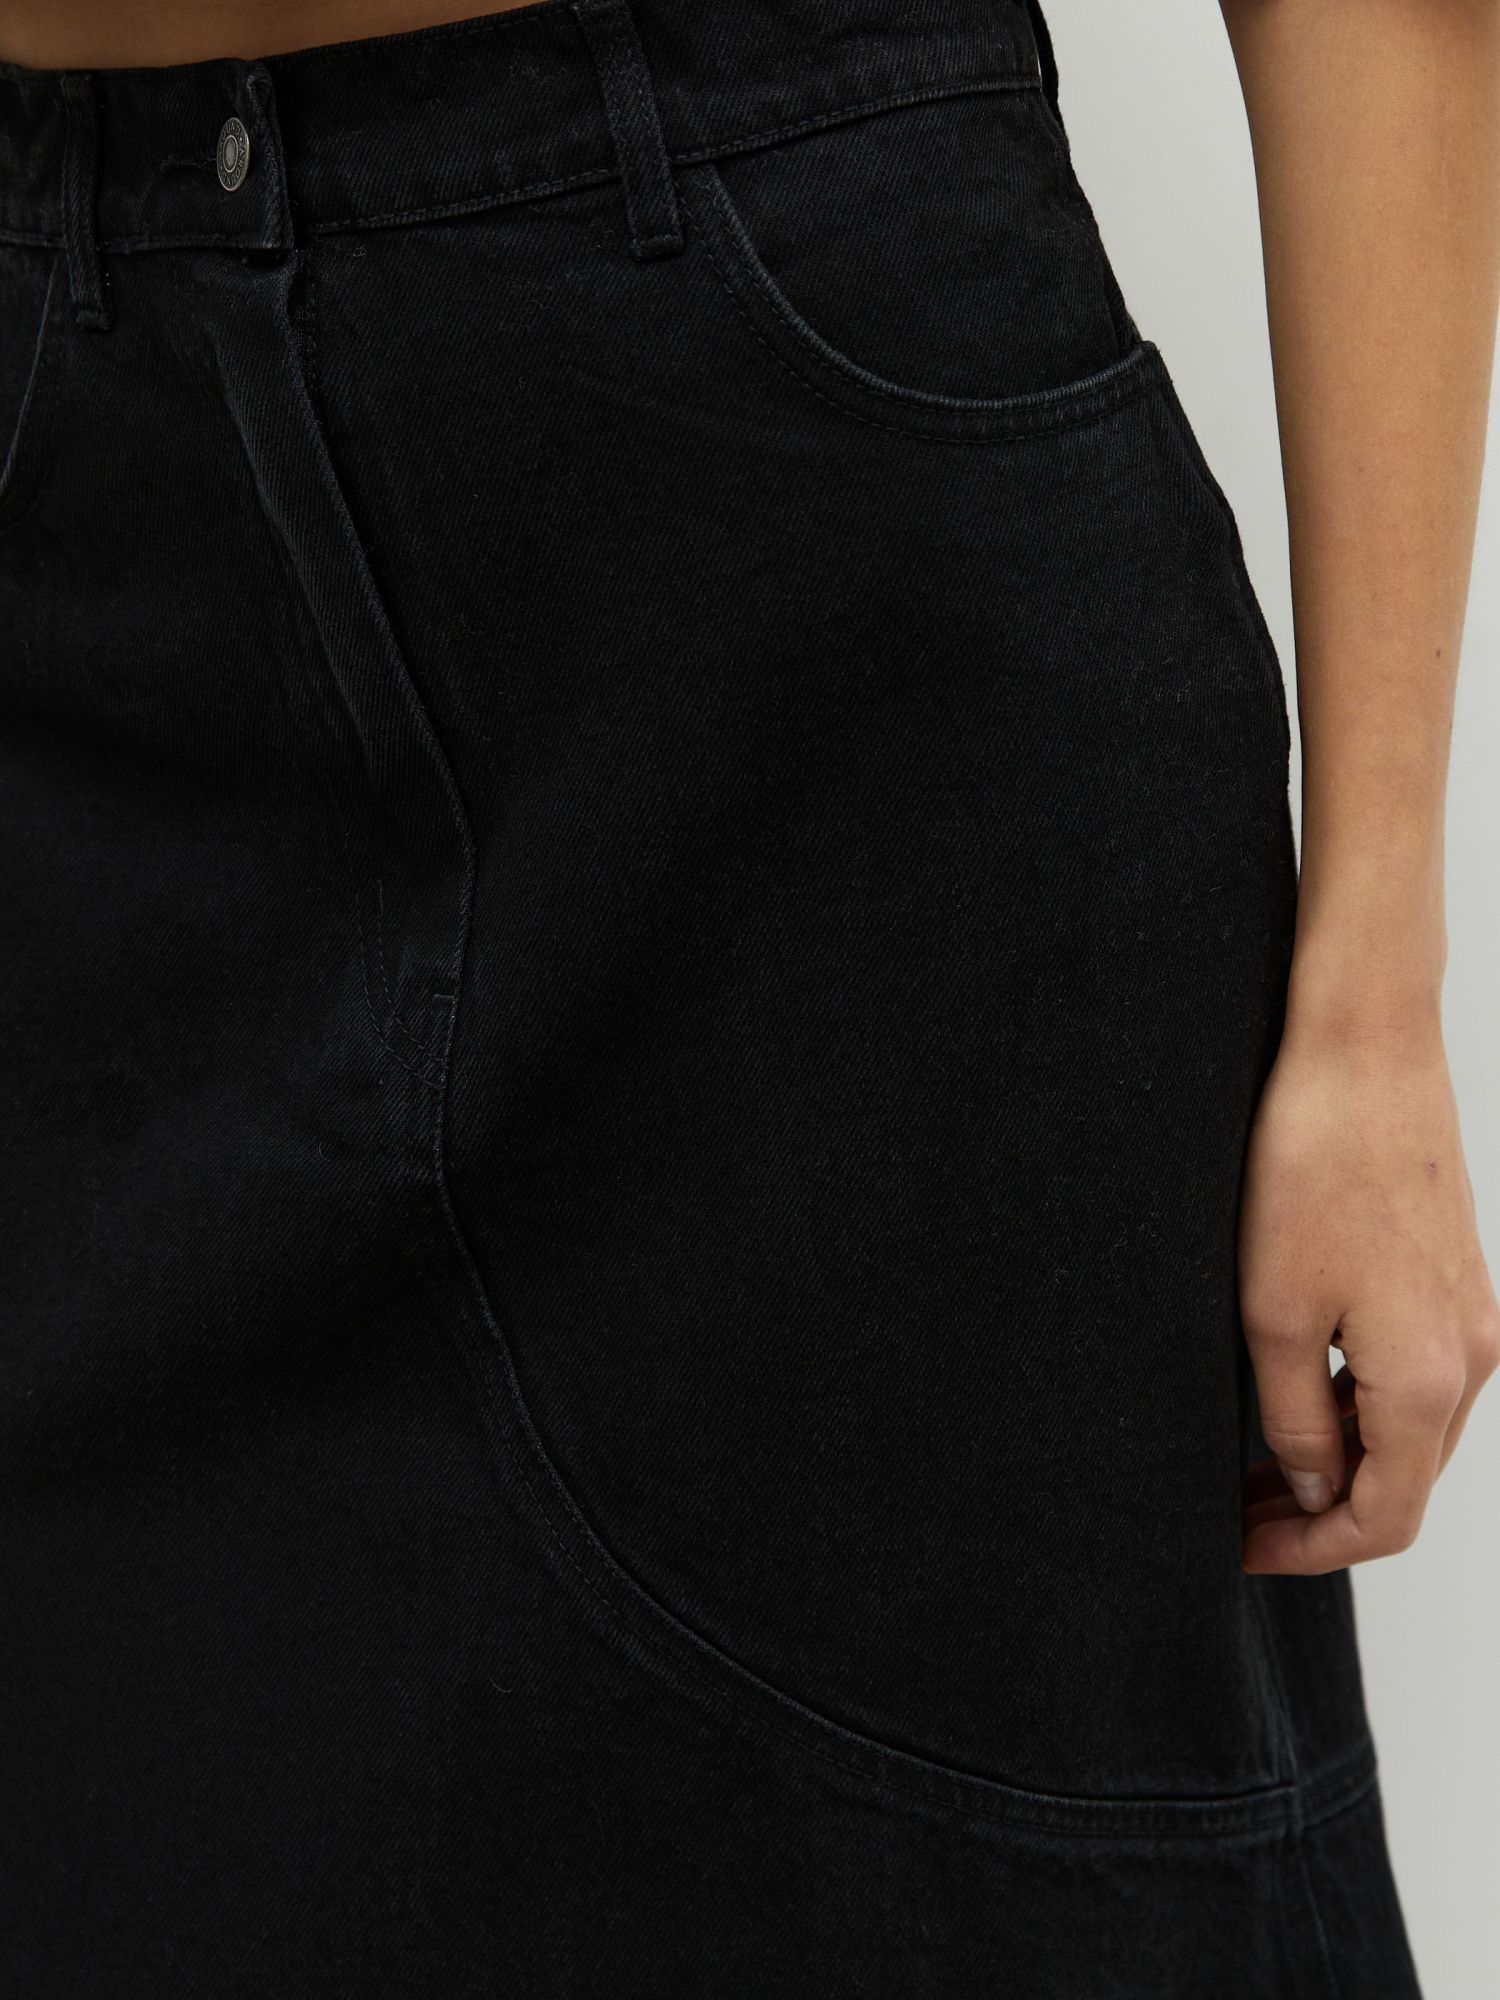 Юбка джинсовая сложного кроя черный - фото 6. Around